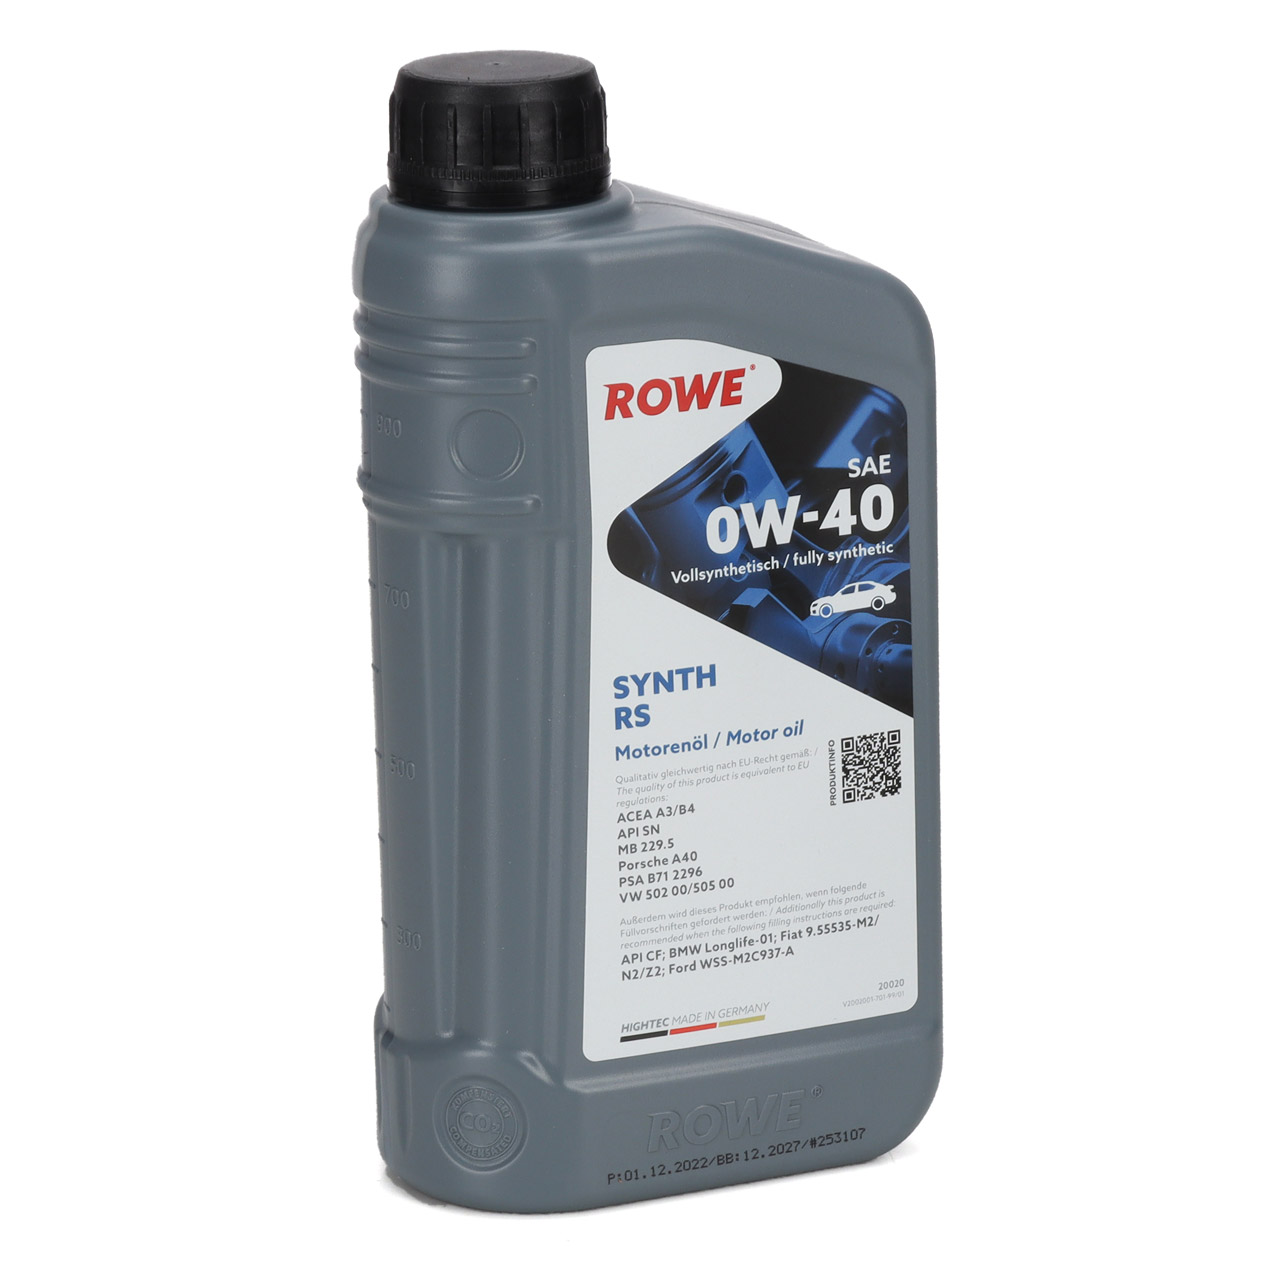 1L 1 Liter ROWE SYNTH RS 0W40 Motoröl Öl MB 229.5 Porsche A40 PSA B712296 VW 502/505.00